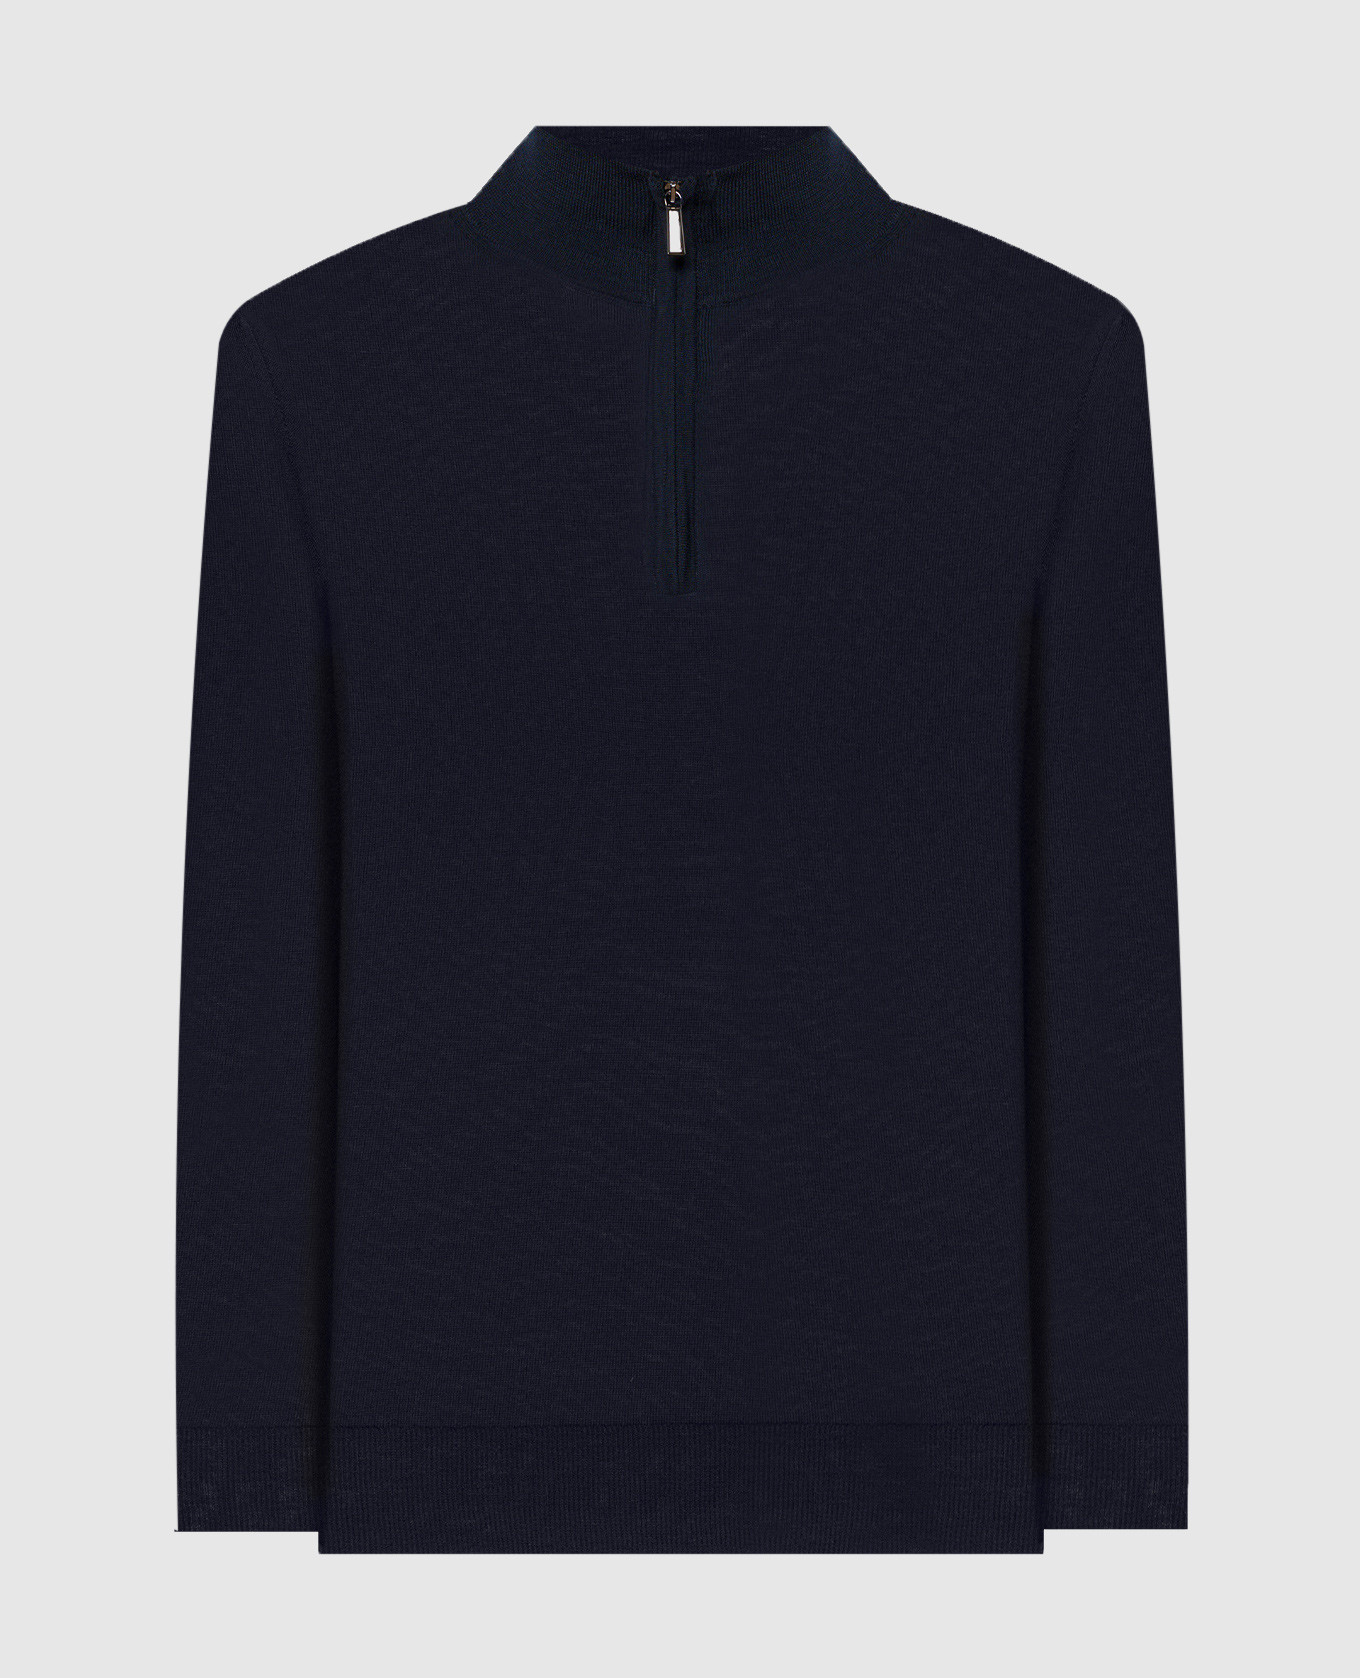 TERNIMLL blue wool jumper